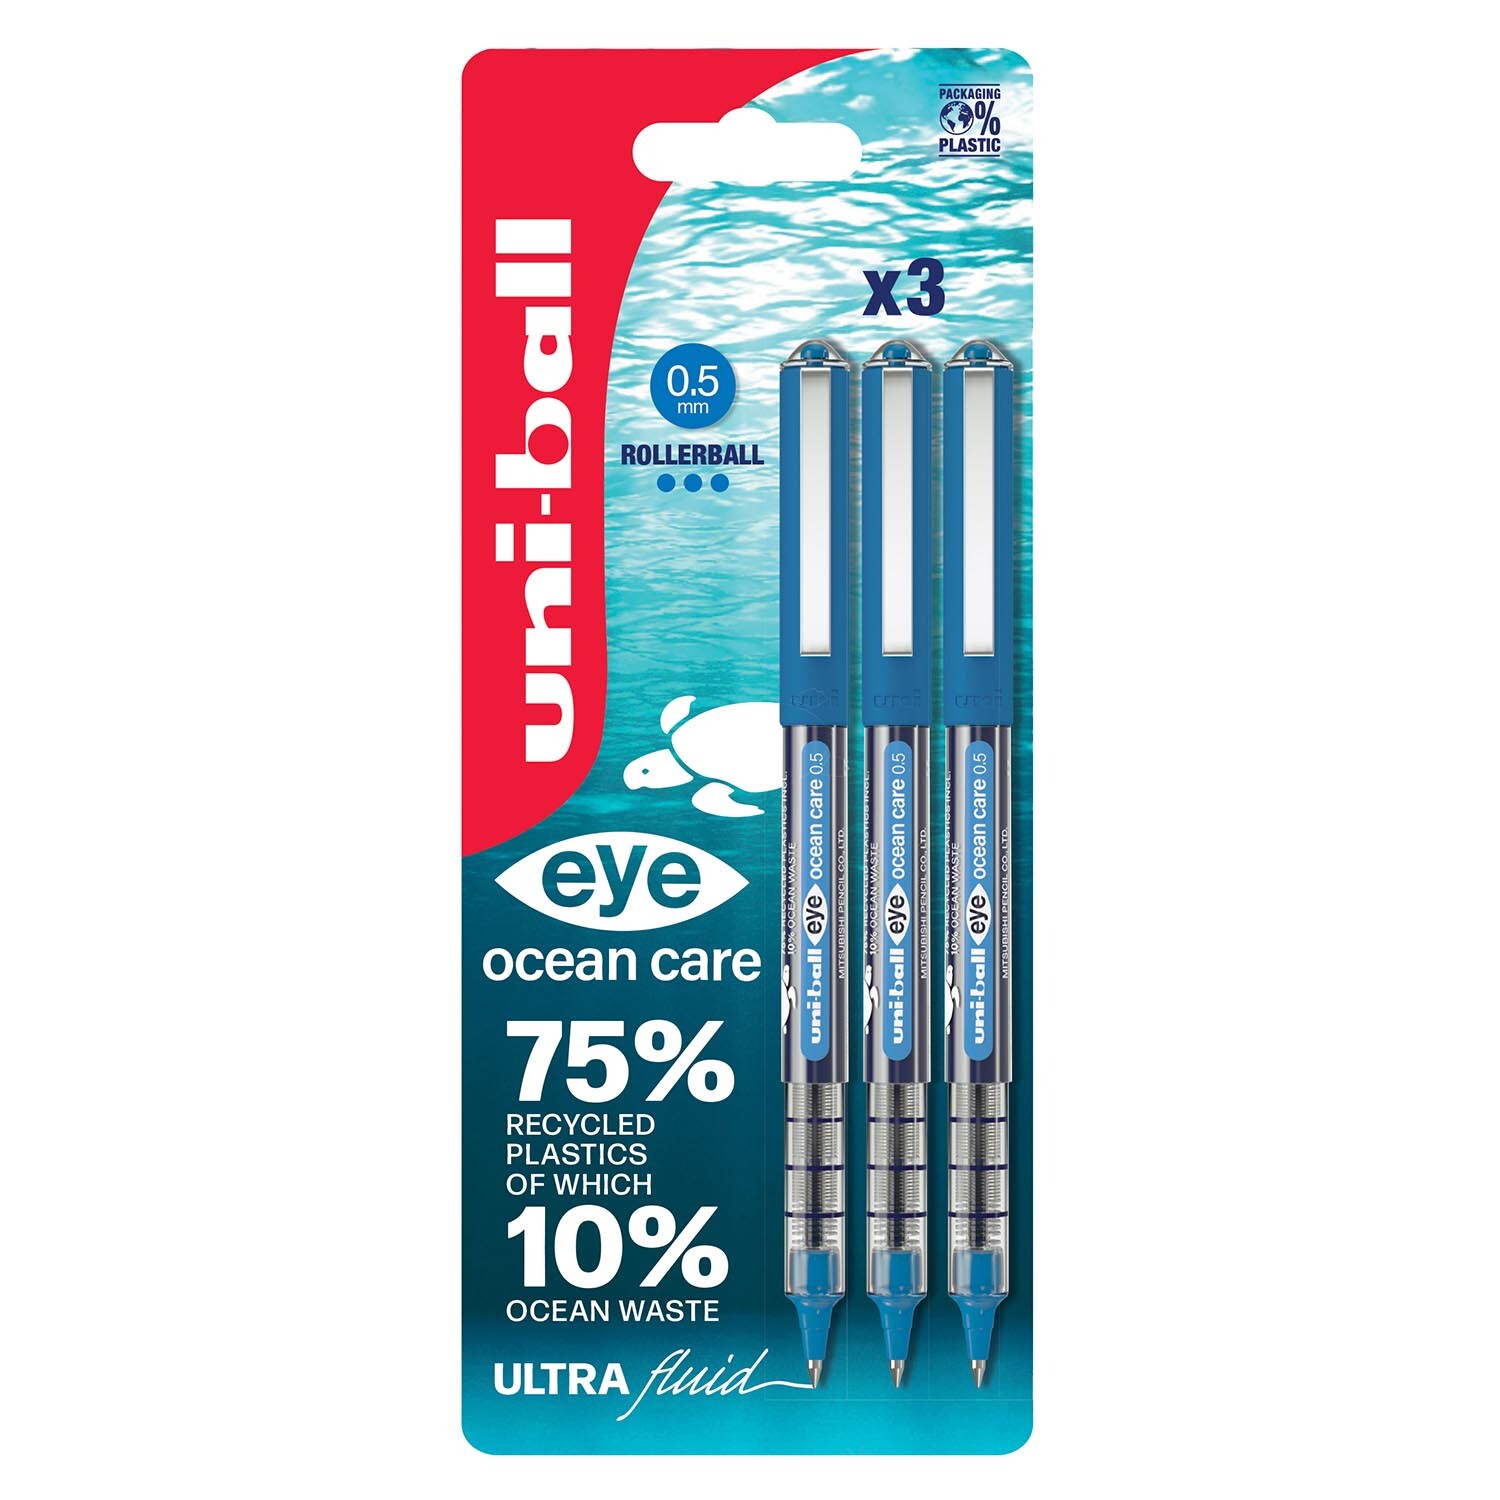 Uniball Blue Eye Ocean Care Pen 3 Pack Image